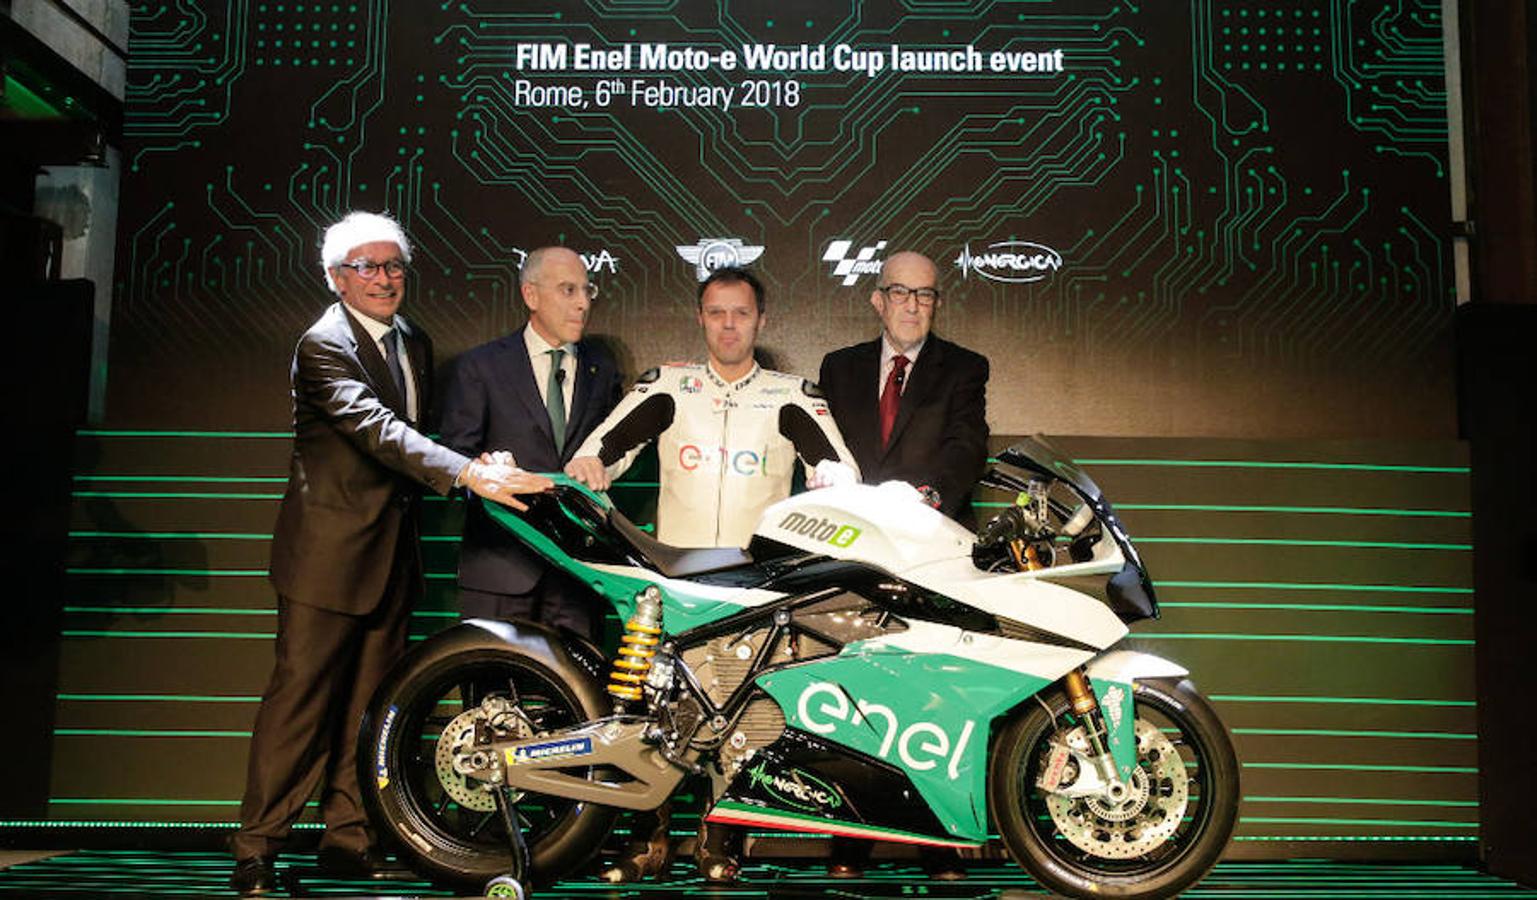 El acto celebrado en Roma para introducir el campeonato de motos eléctricas contó con la presencia del piloto italiano Loris Capirossi.